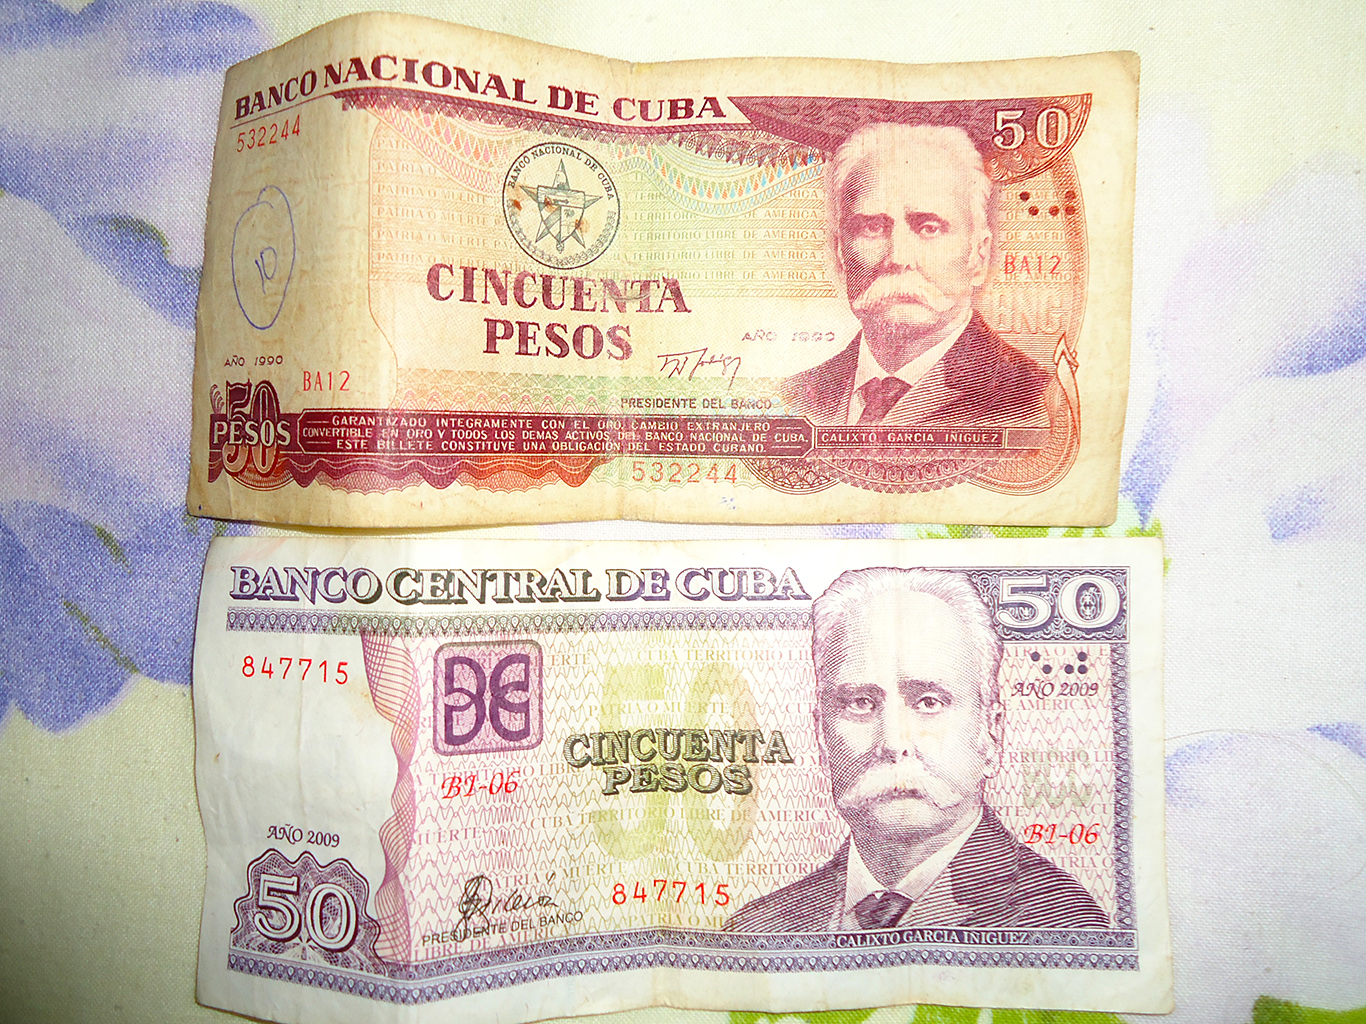 Peso cubano je v současnosti jedinou oficiální kubánskou měnou